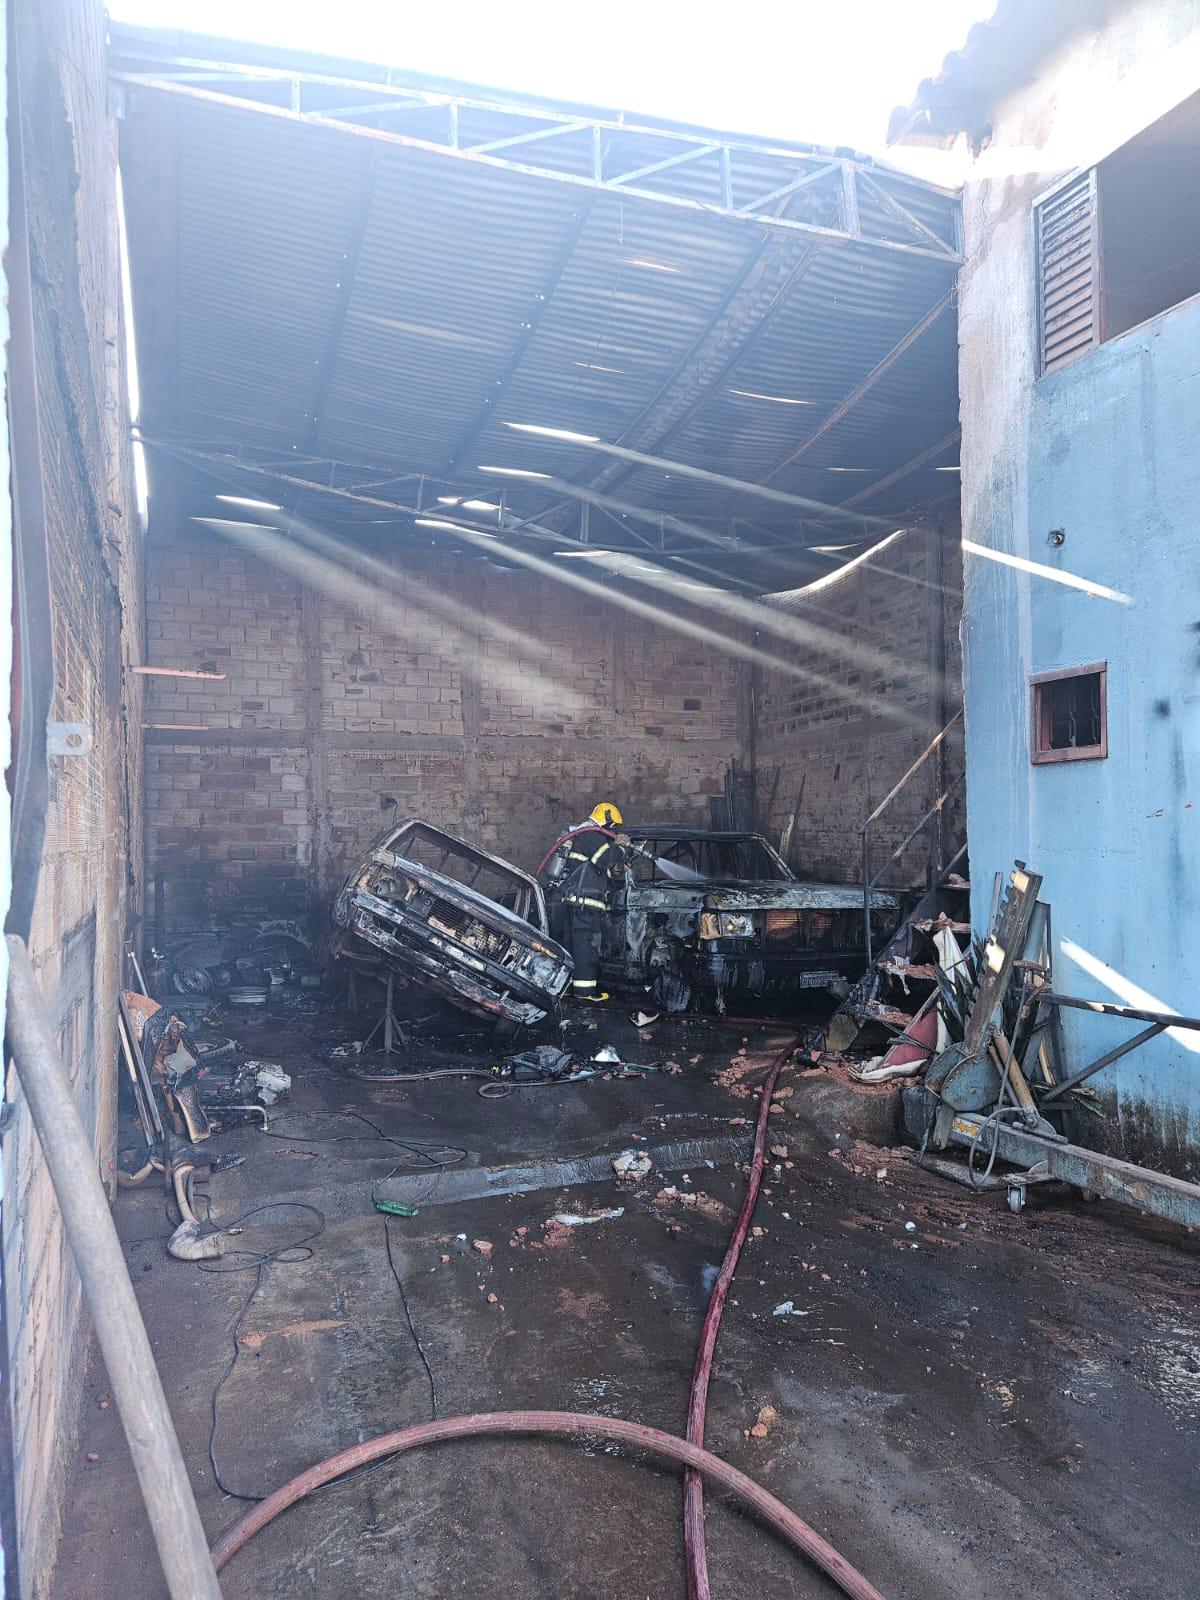 Veículos ficaram totalmente destruídos, e parte da estrutura do imóvel também dicou comprometida devido às chamas (Foto/Divulgação)